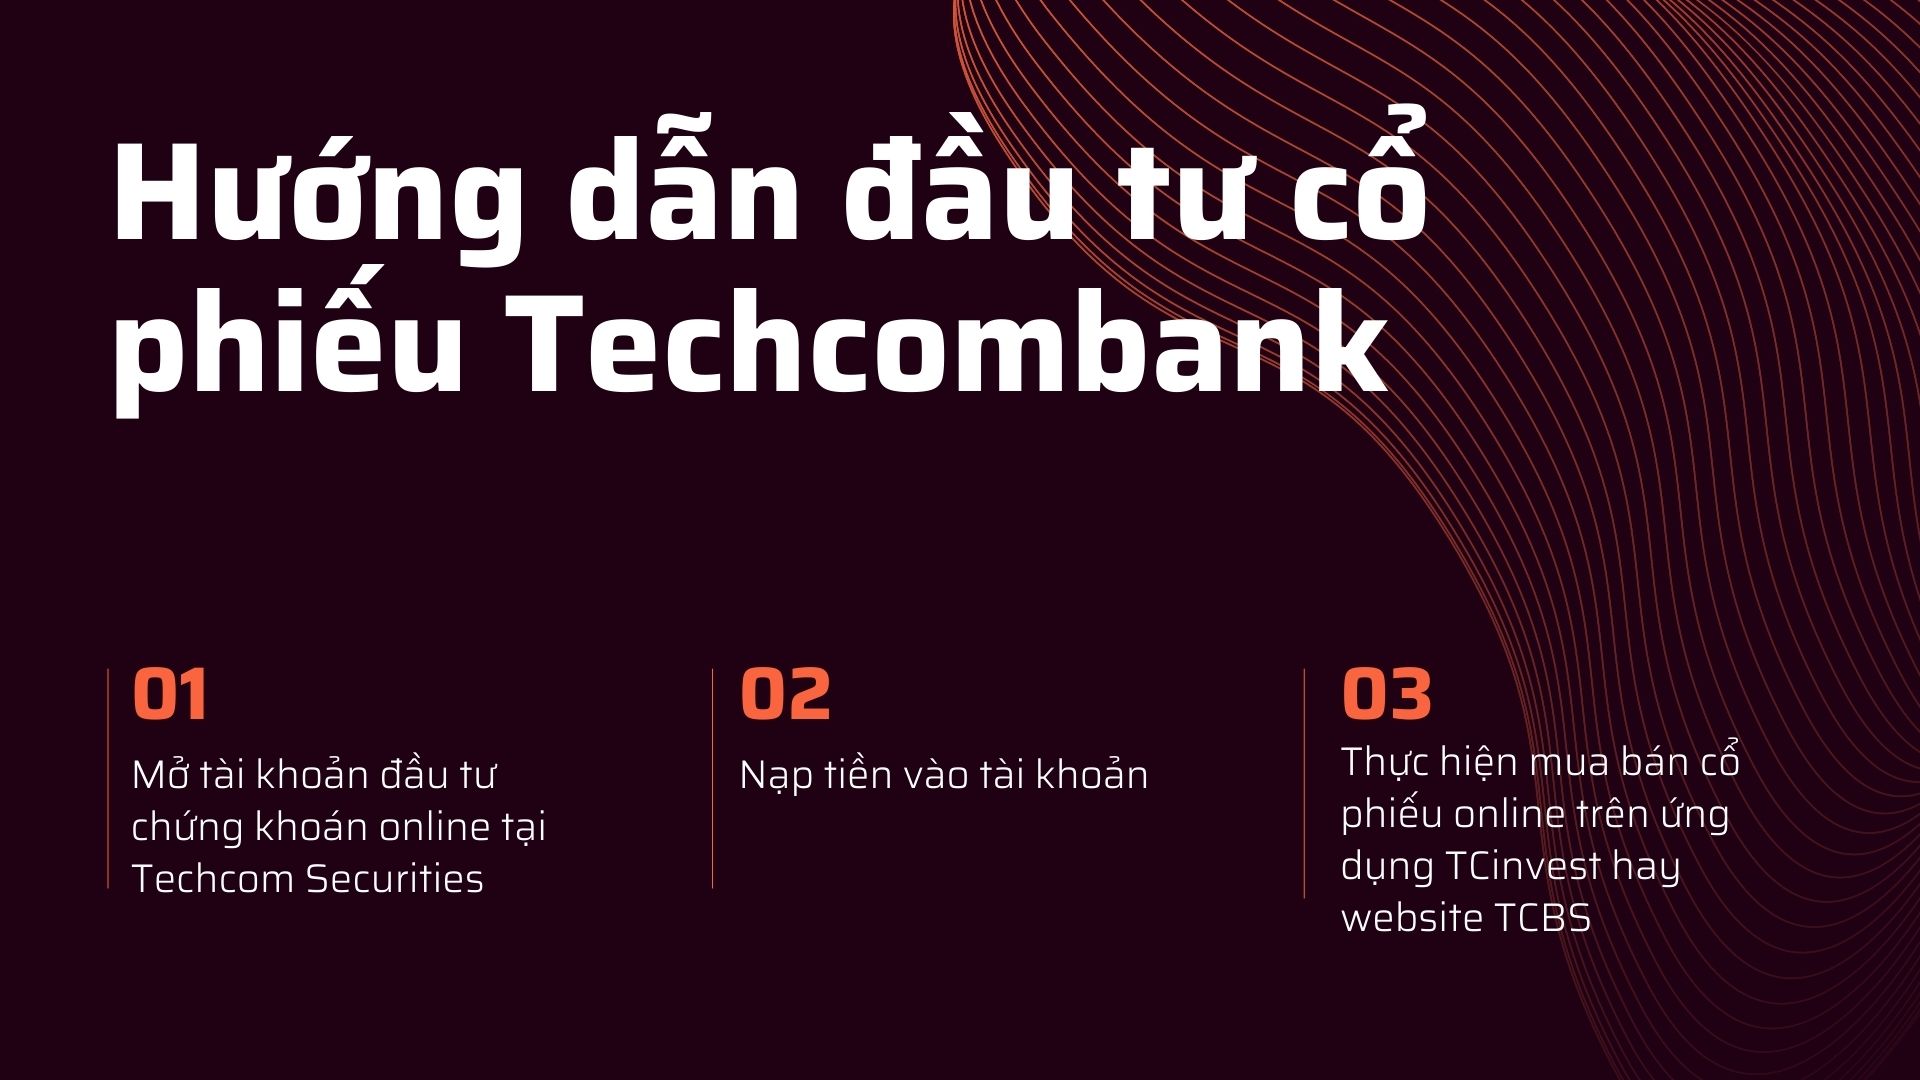 Hướng dẫn đầu tư cổ phiếu Techcombank